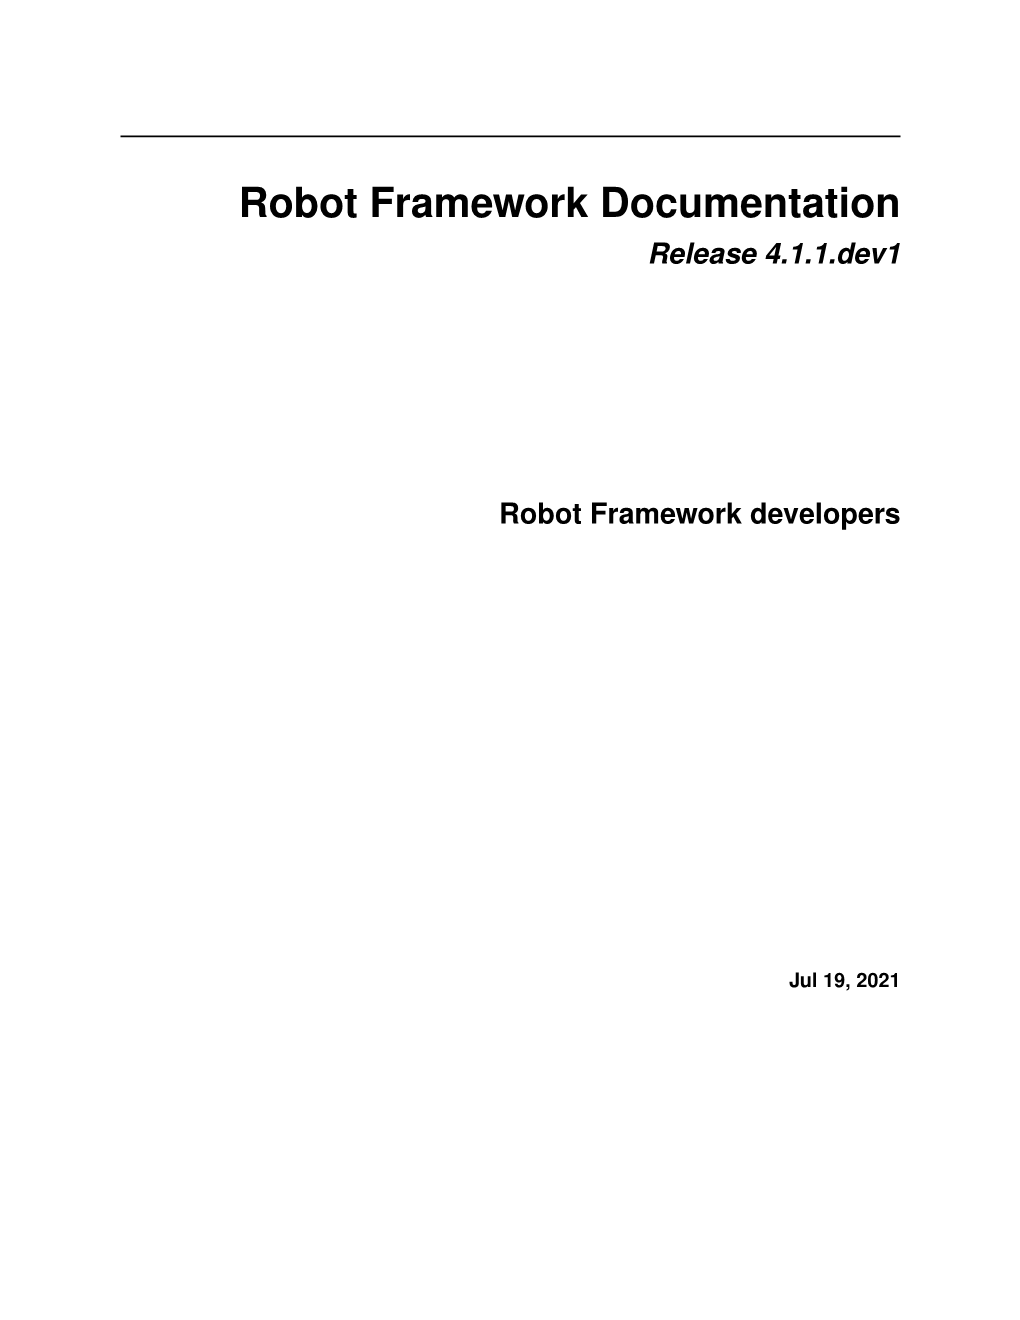 Robot Framework Documentation Release 4.1.1.Dev1